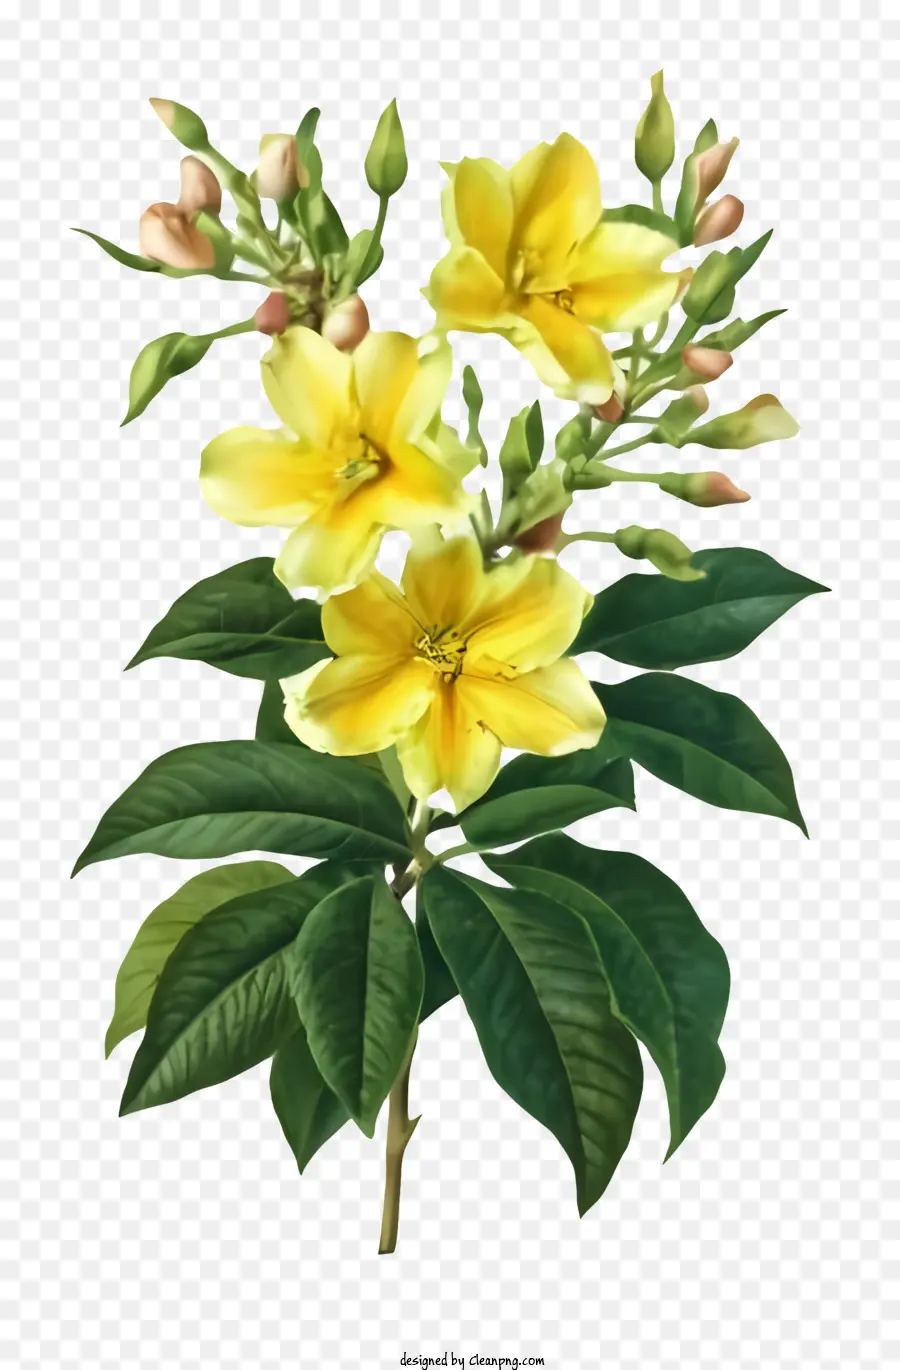 Cartoonblume gelbe Blütenblätter grüner Blätter Stamm - Gelbe Blume auf Stiel mit grünen Blättern